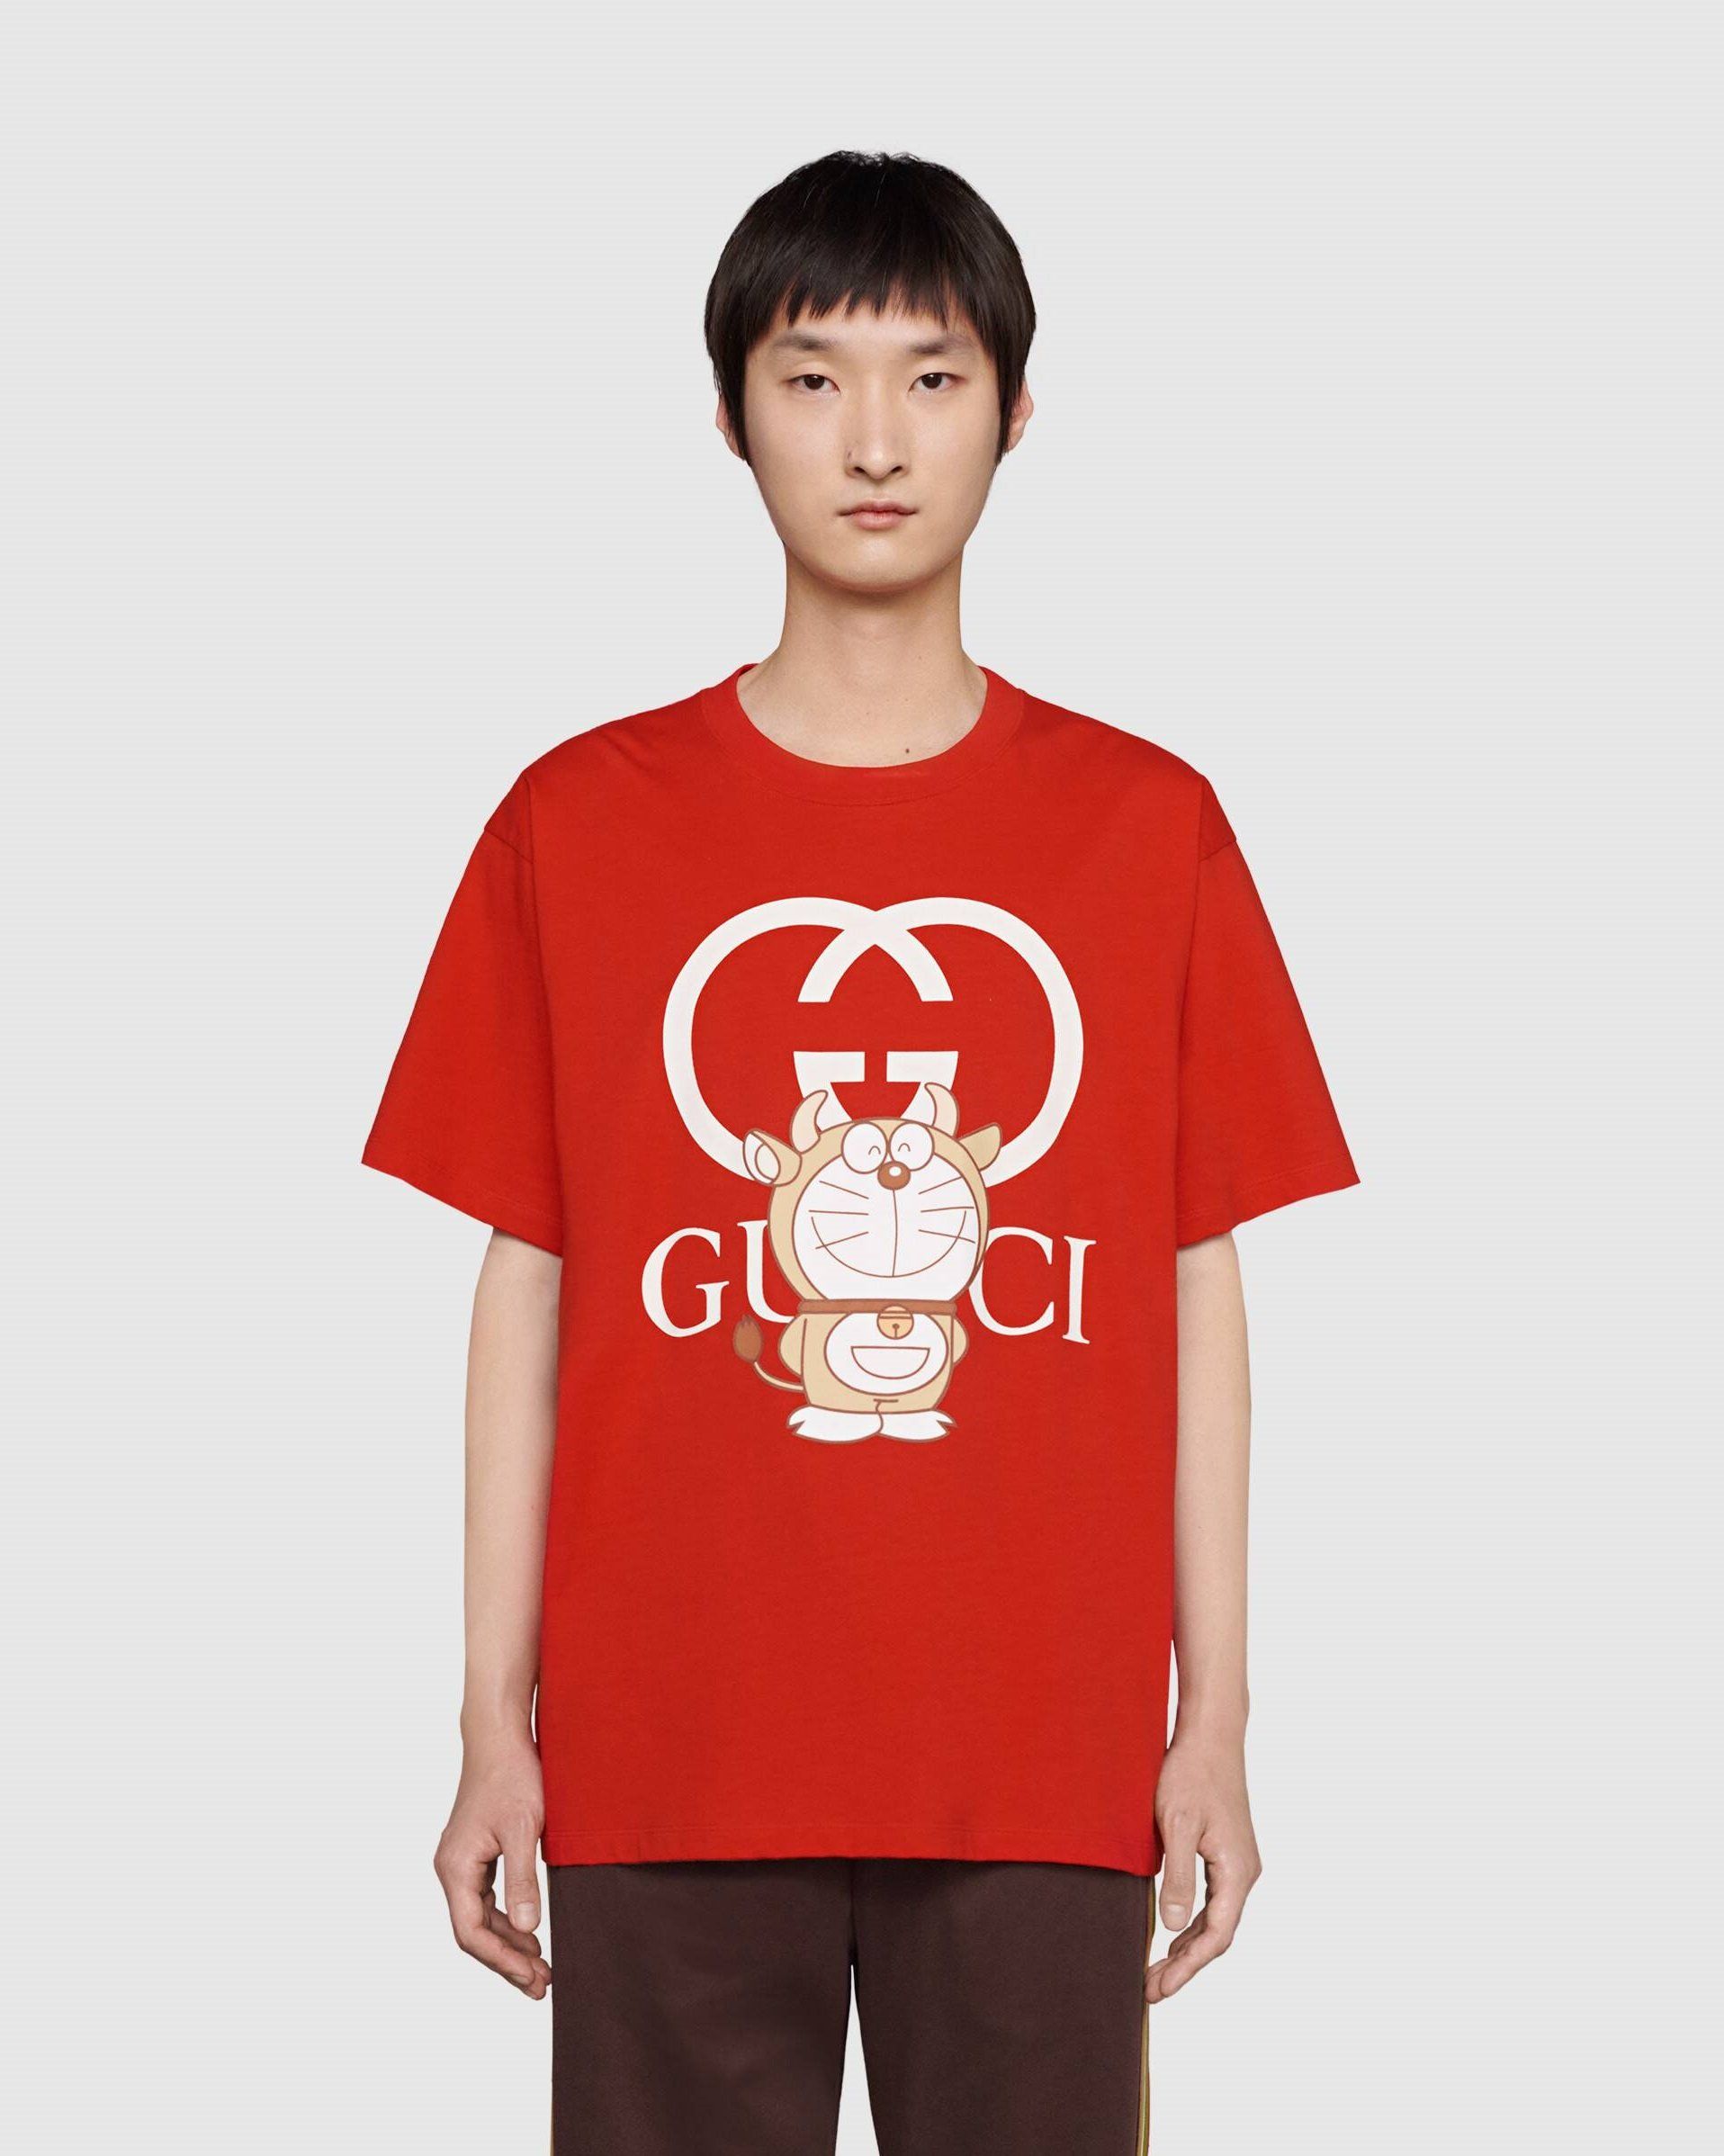 Gucci x Doraemon Oversize T-Shirt, Red – Fashionbarn shop